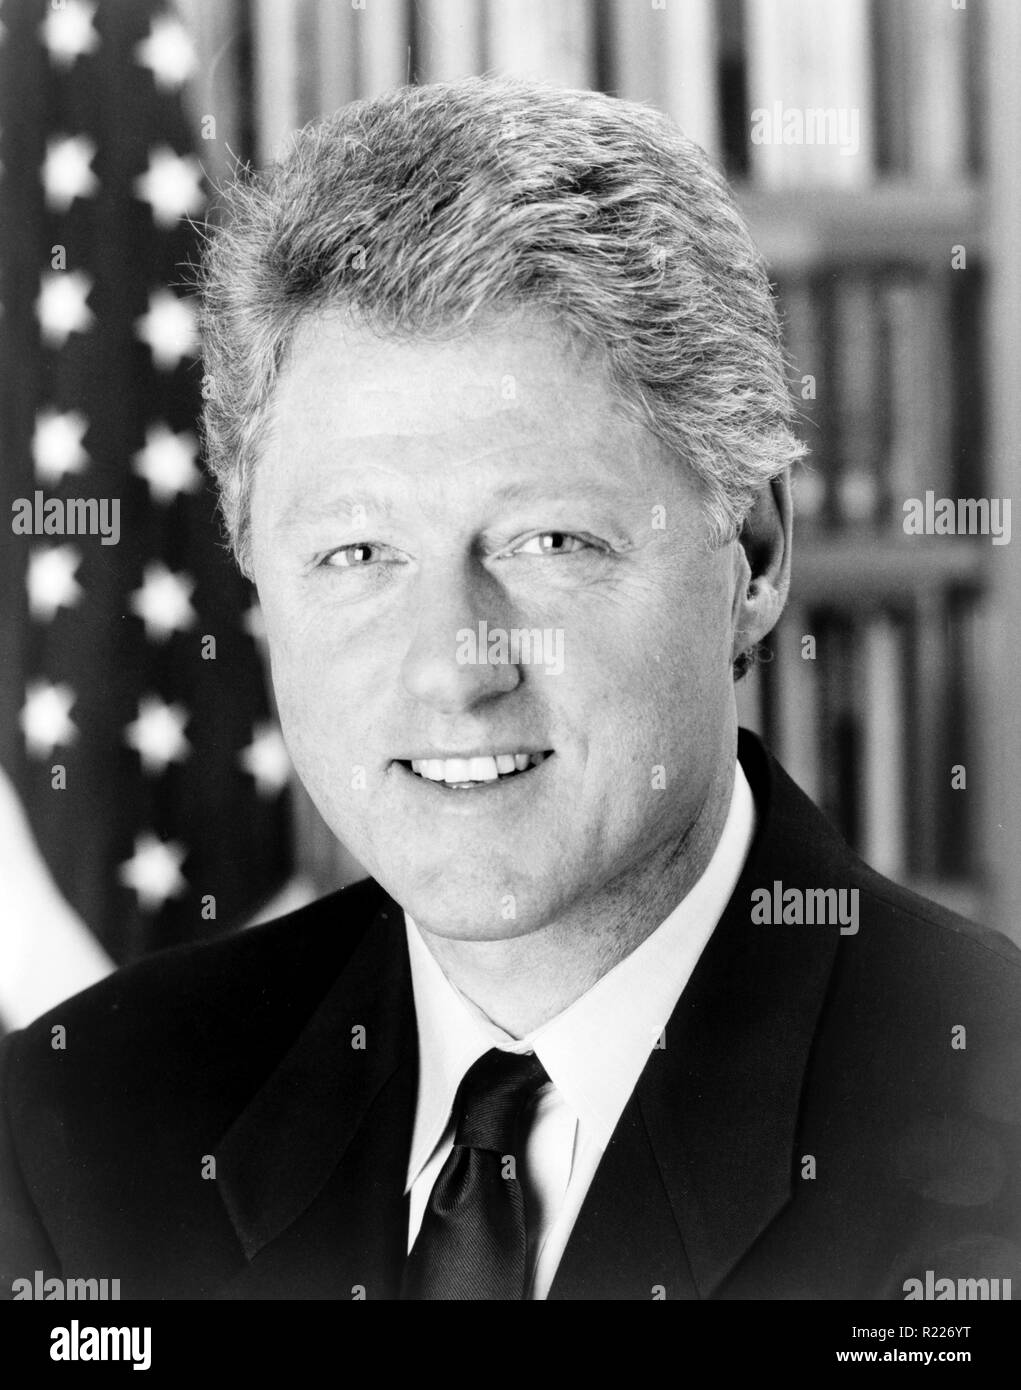 Bill Clinton Portrait Fotos Und Bildmaterial In Hoher Auflösung Alamy 